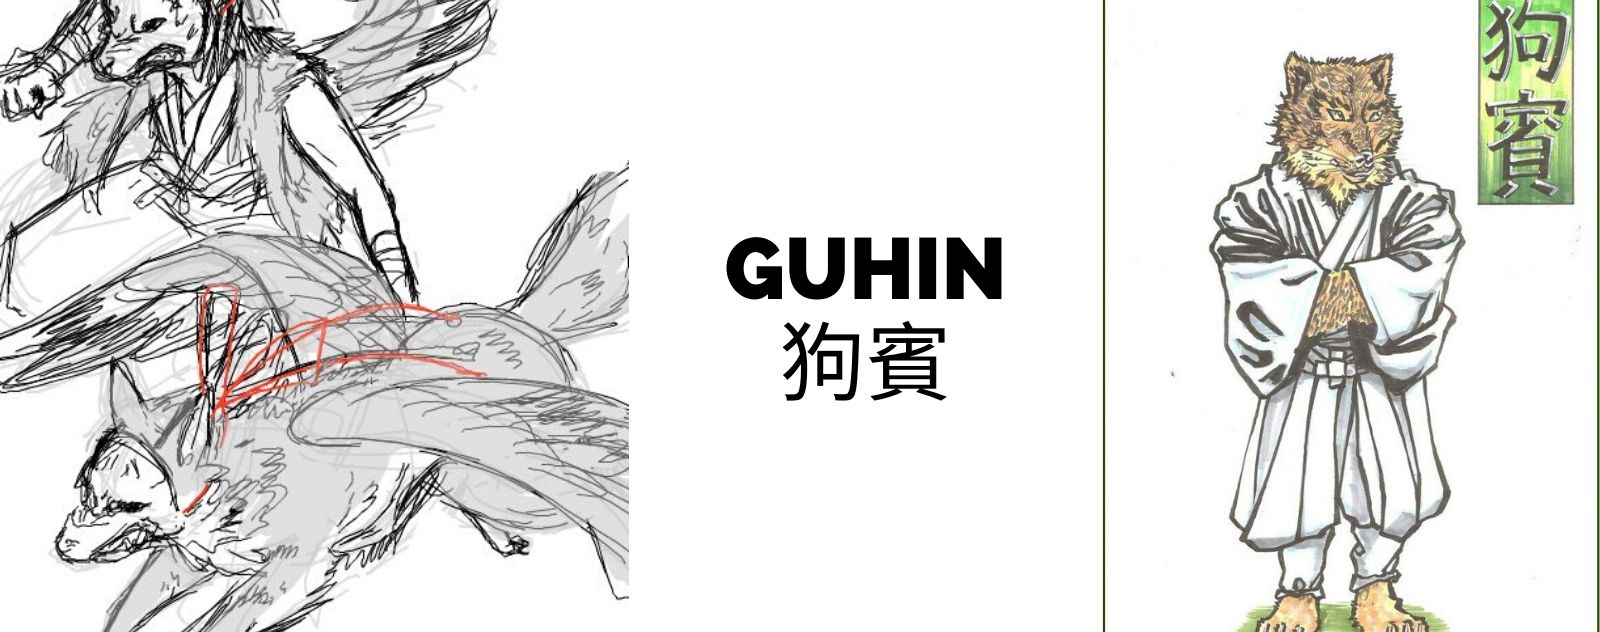 guhin